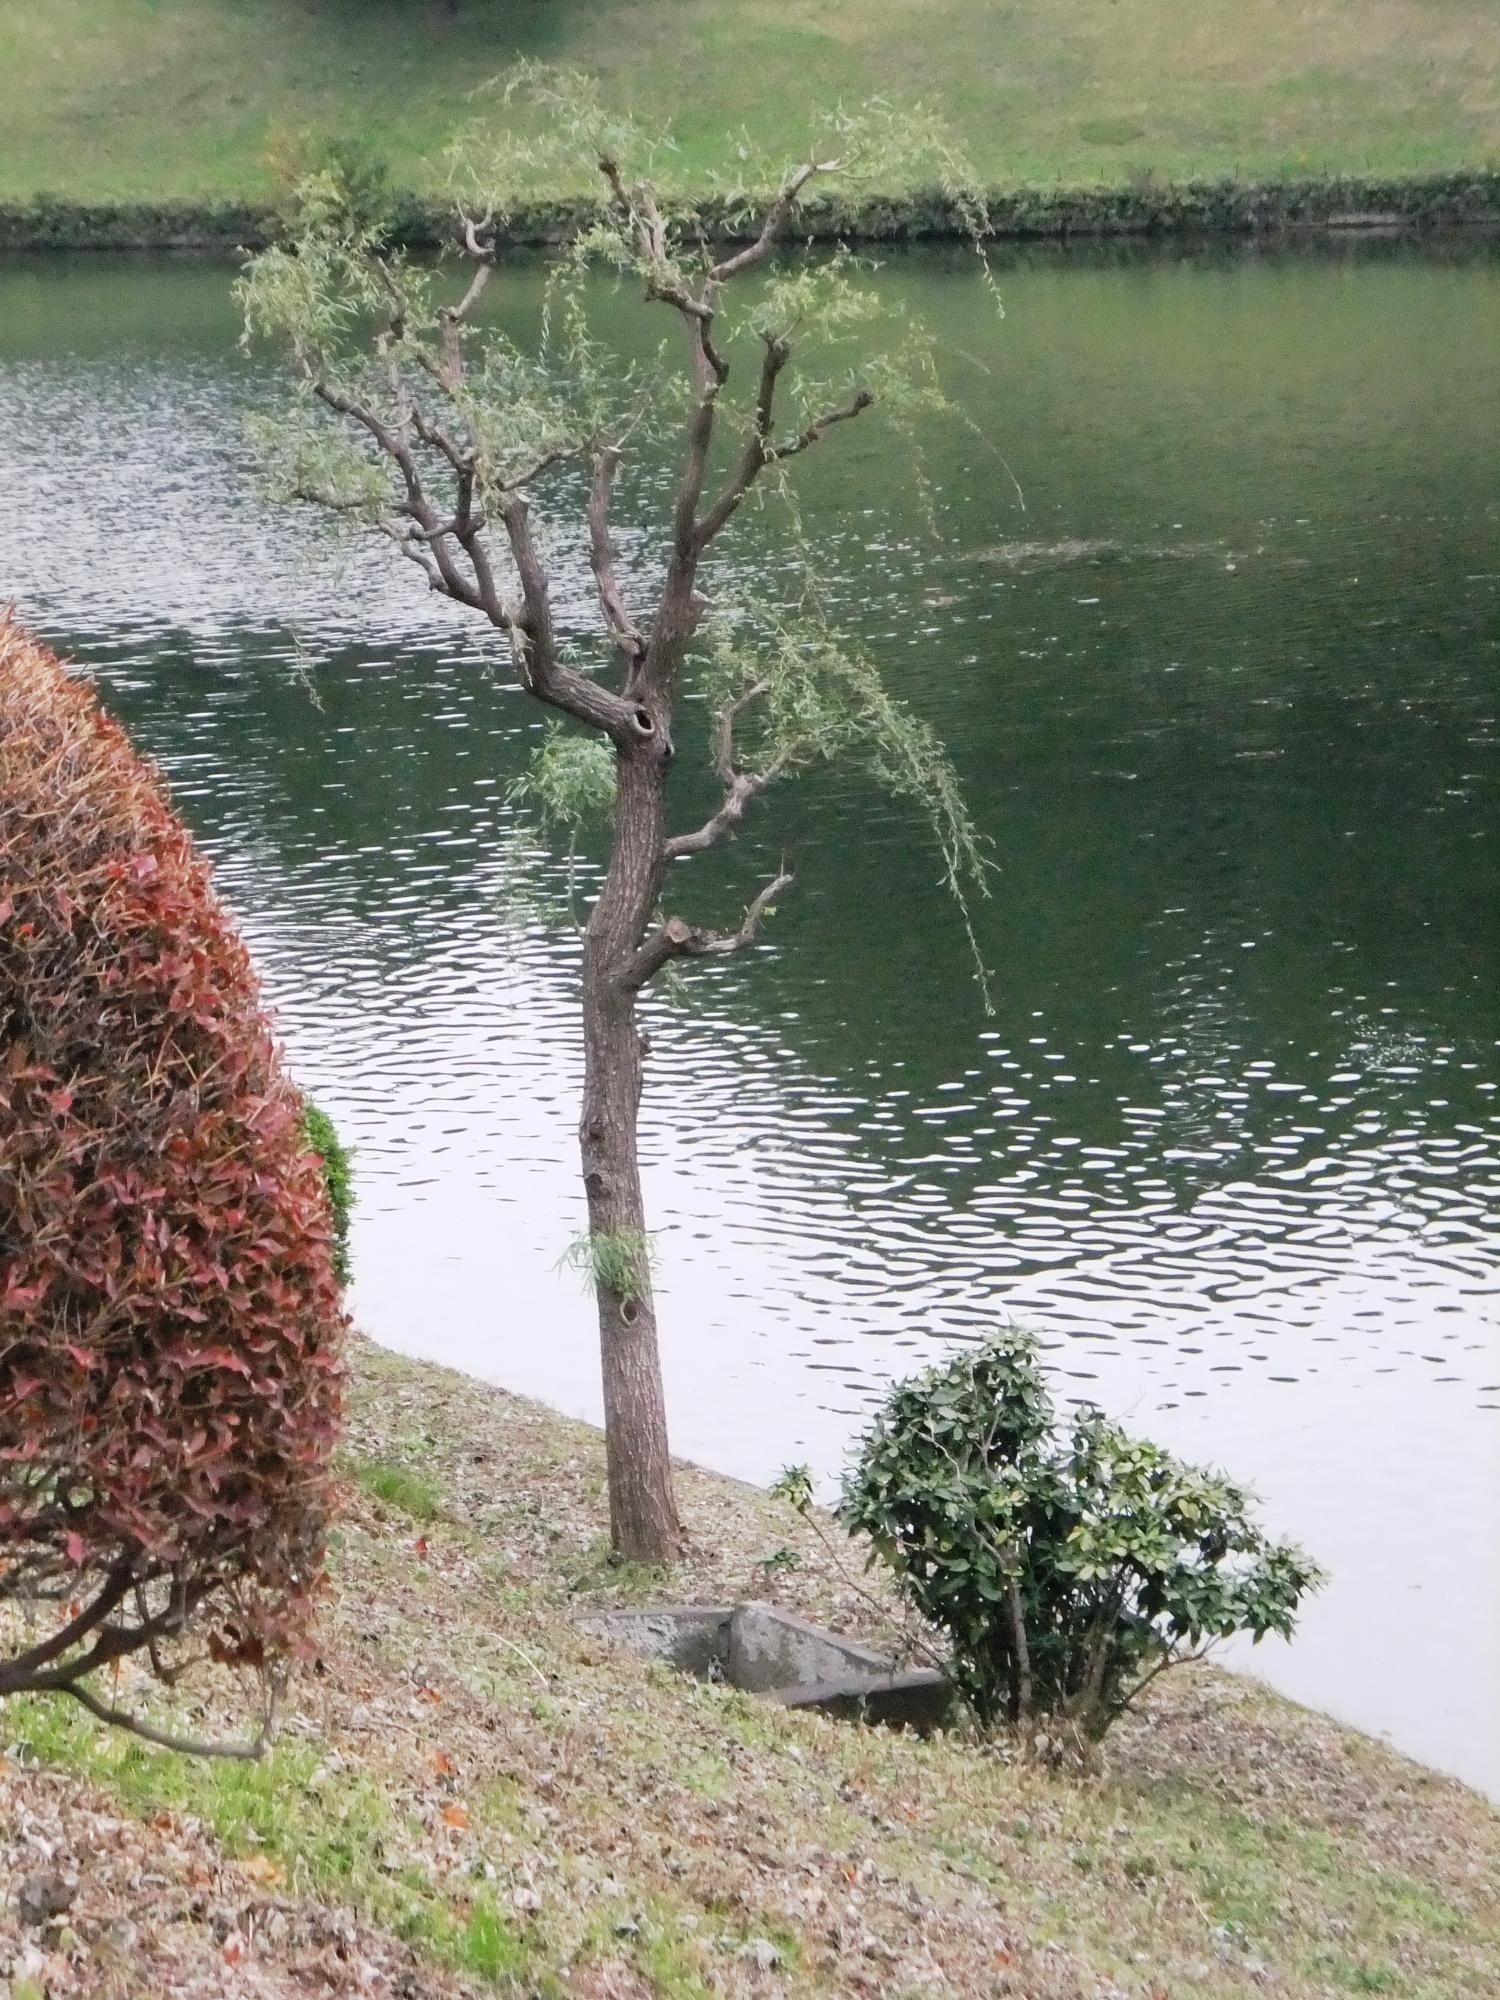 桜田濠の土手下にある1本の柳の木の横にある井戸を写した写真